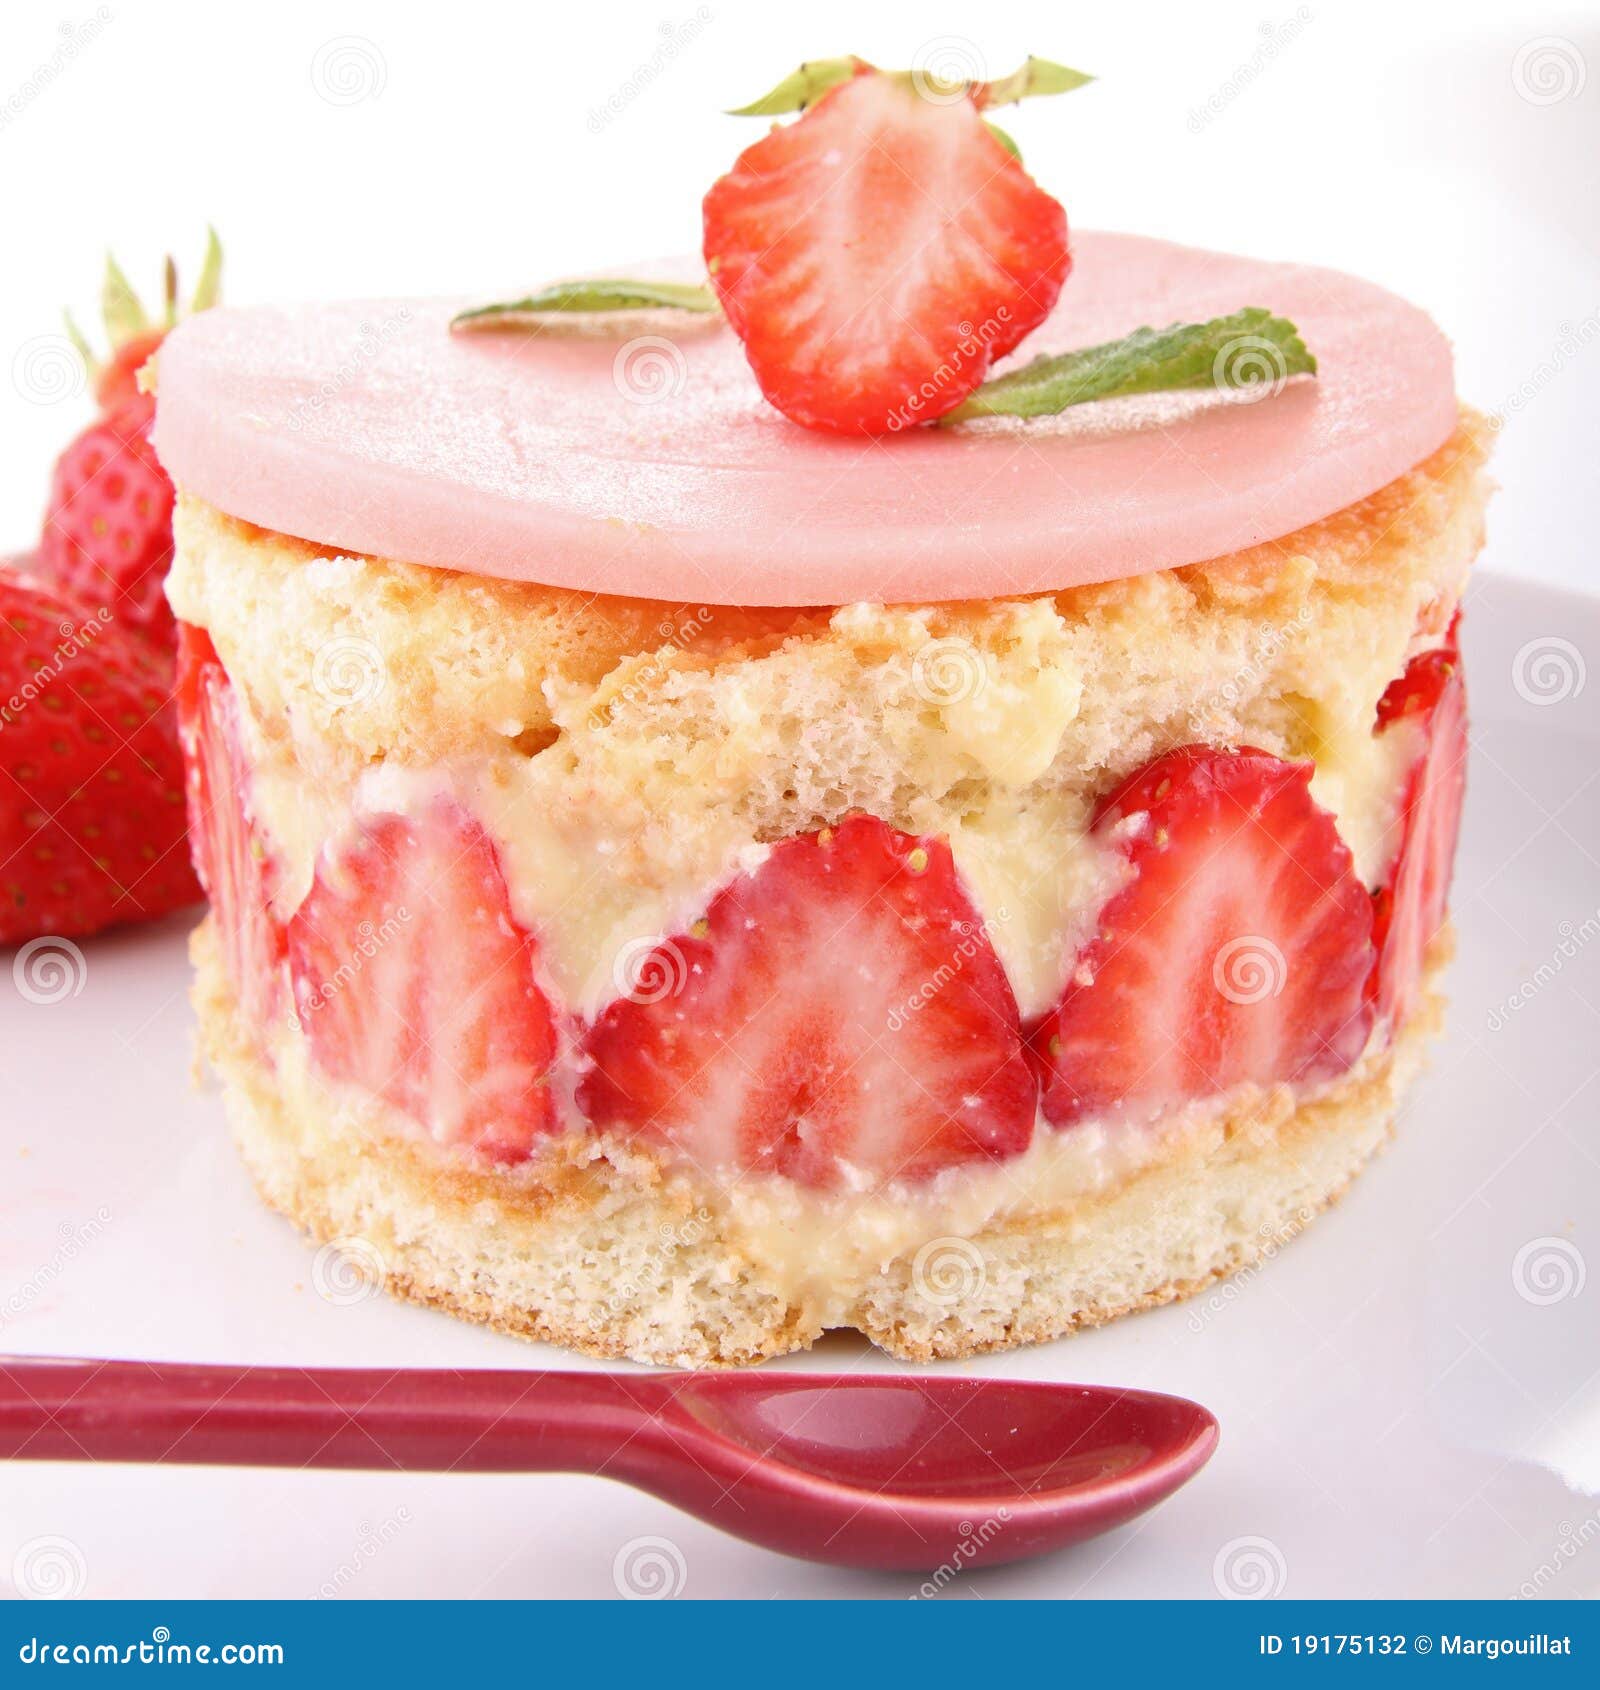 clipart strawberry shortcake dessert - photo #33